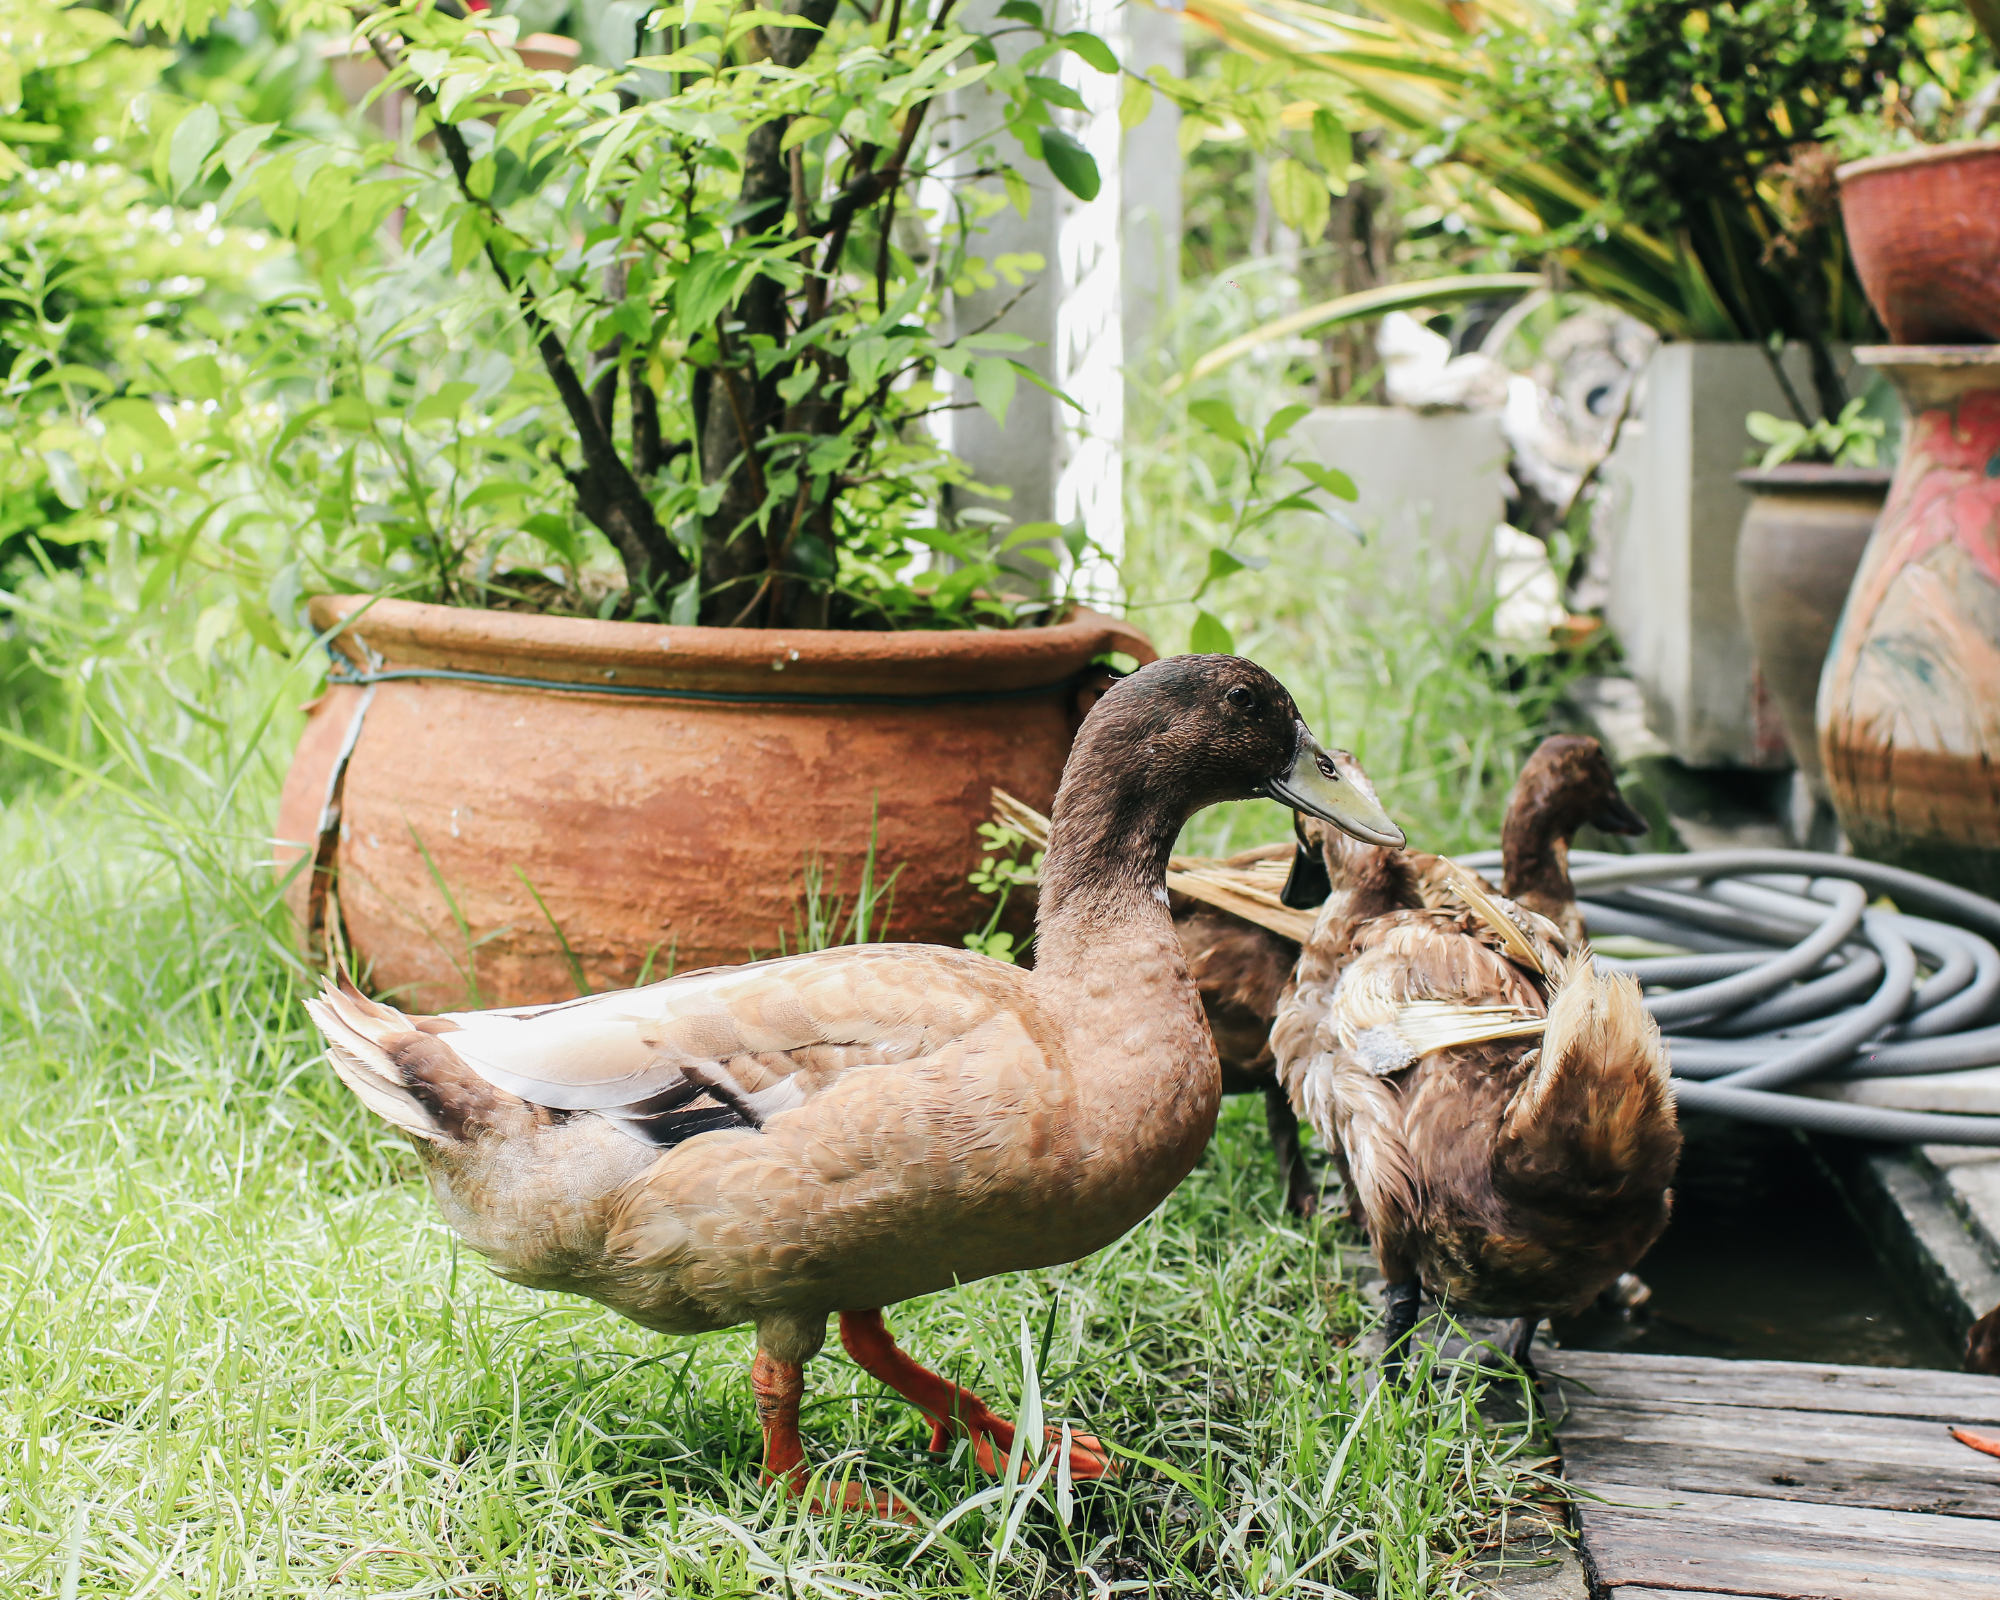 pet ducks in garden